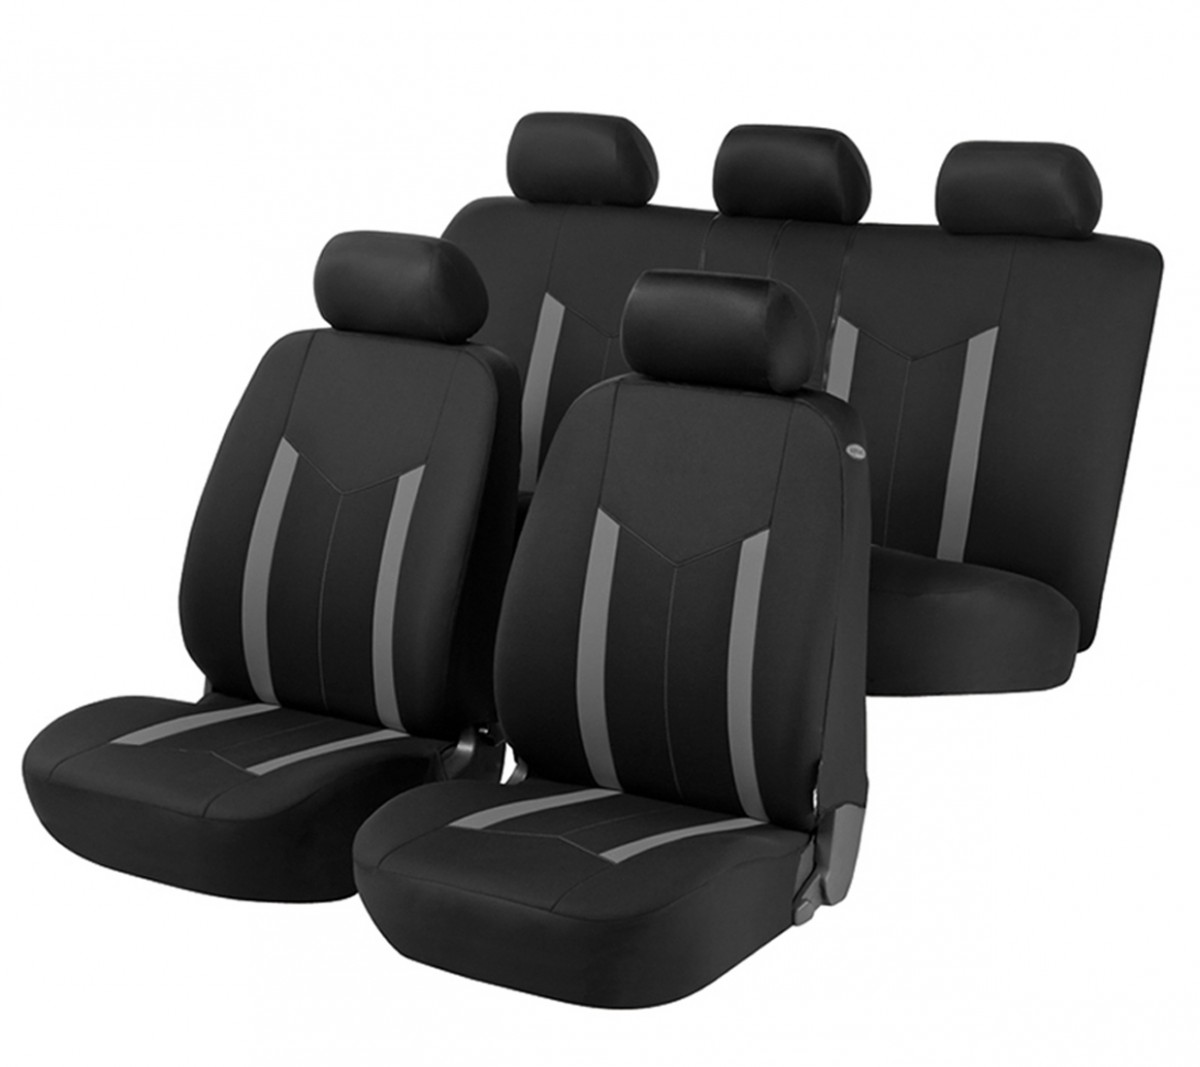 BAFLO Auto Leder Sitzbezüge für Mercedes Benz C-Klasse C180 W205